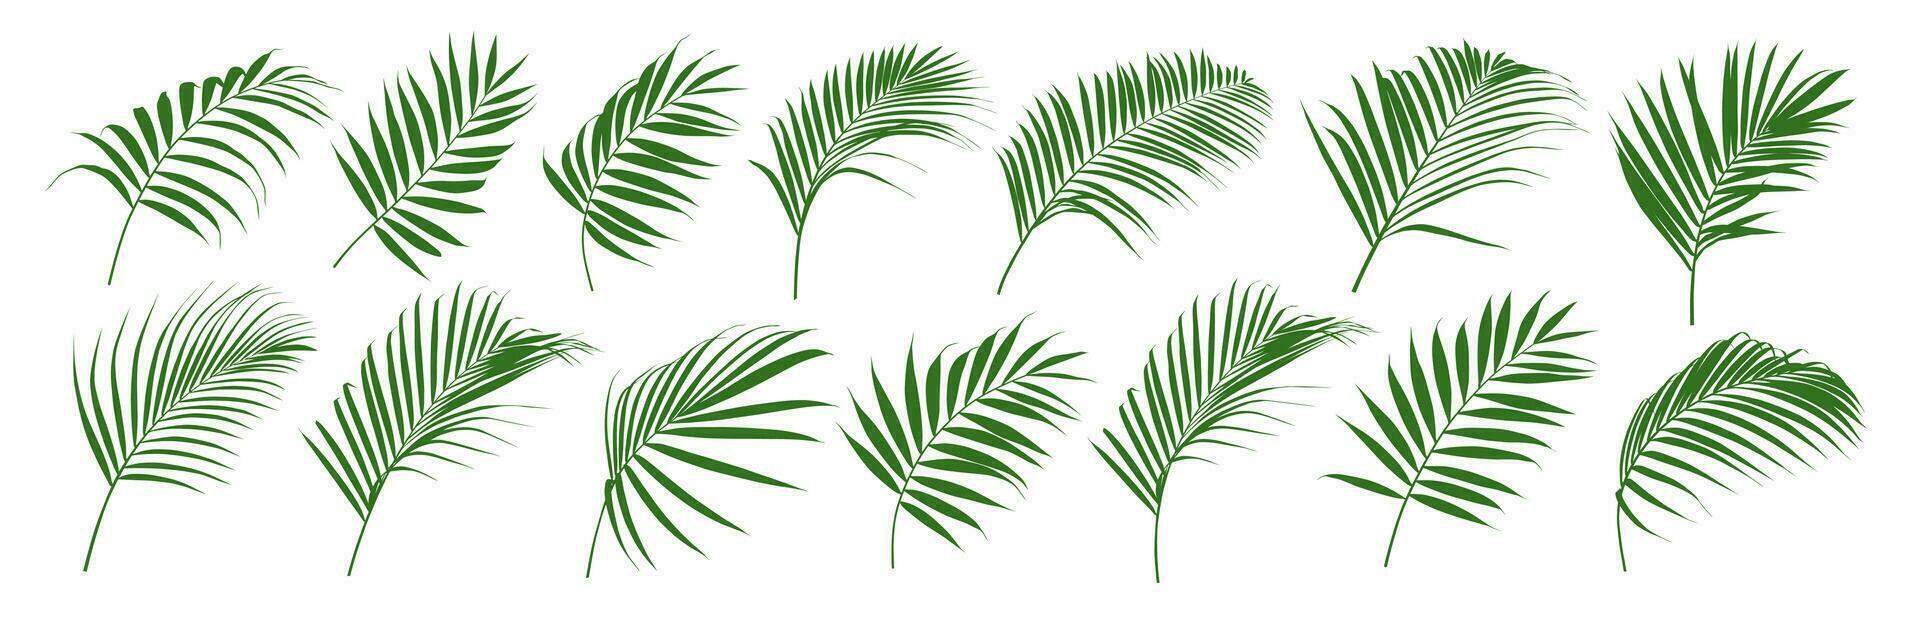 uppsättning av handflatan blad och kokos blad vektor illustratör